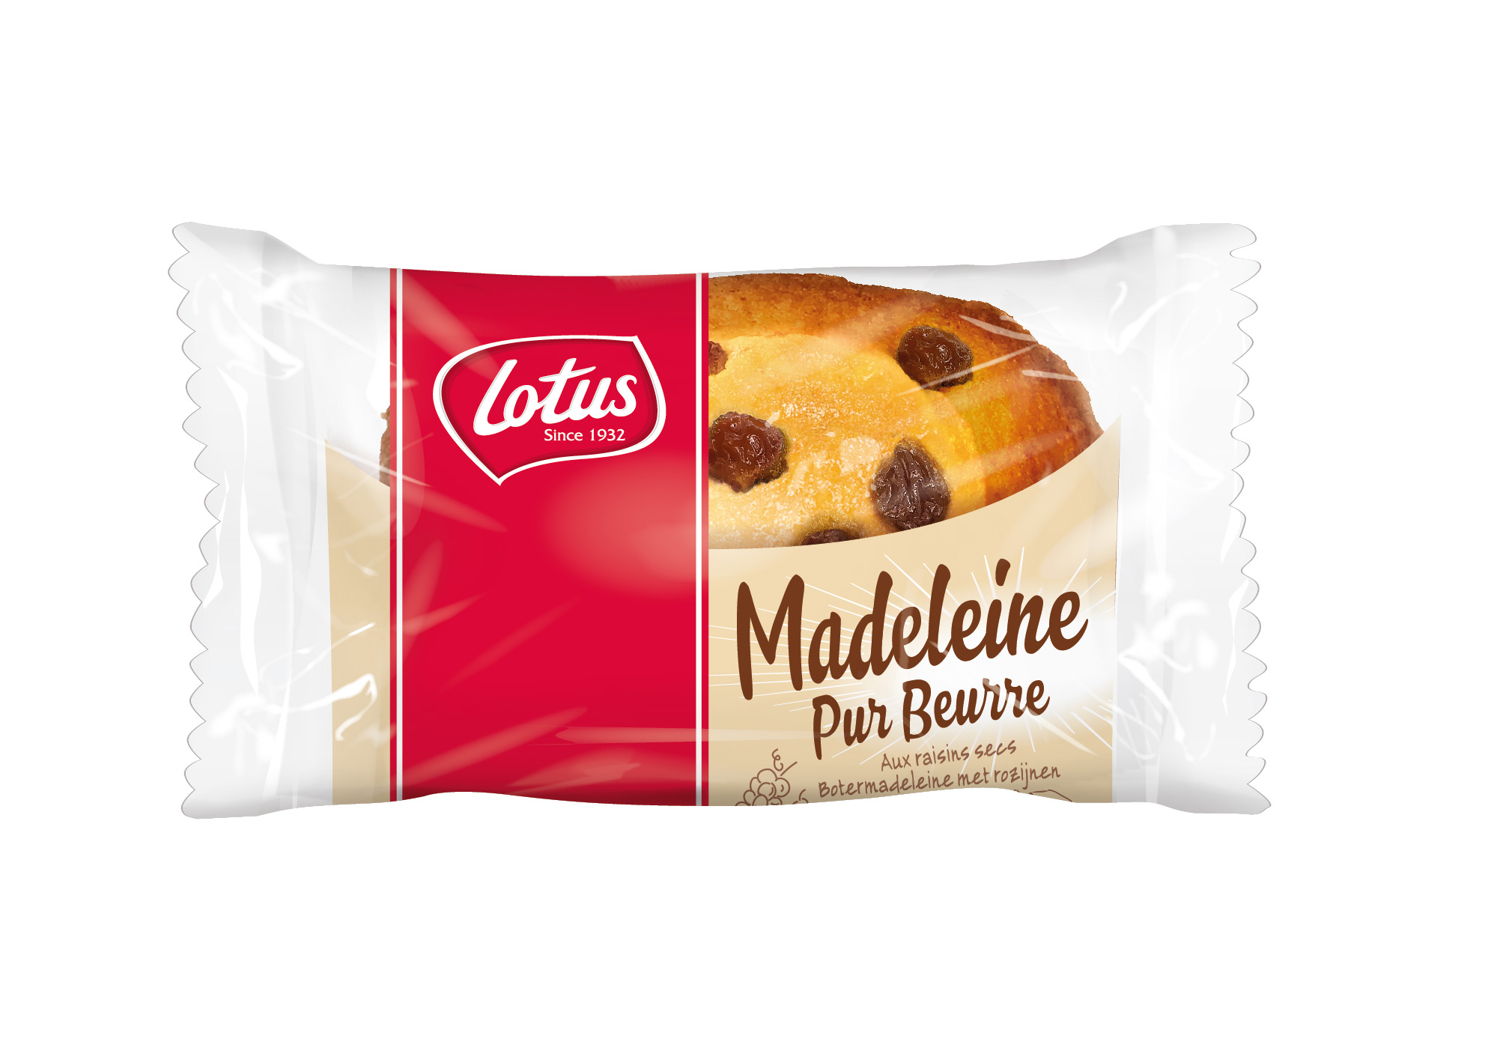 Madeleine Pur Beurre raisins 31g